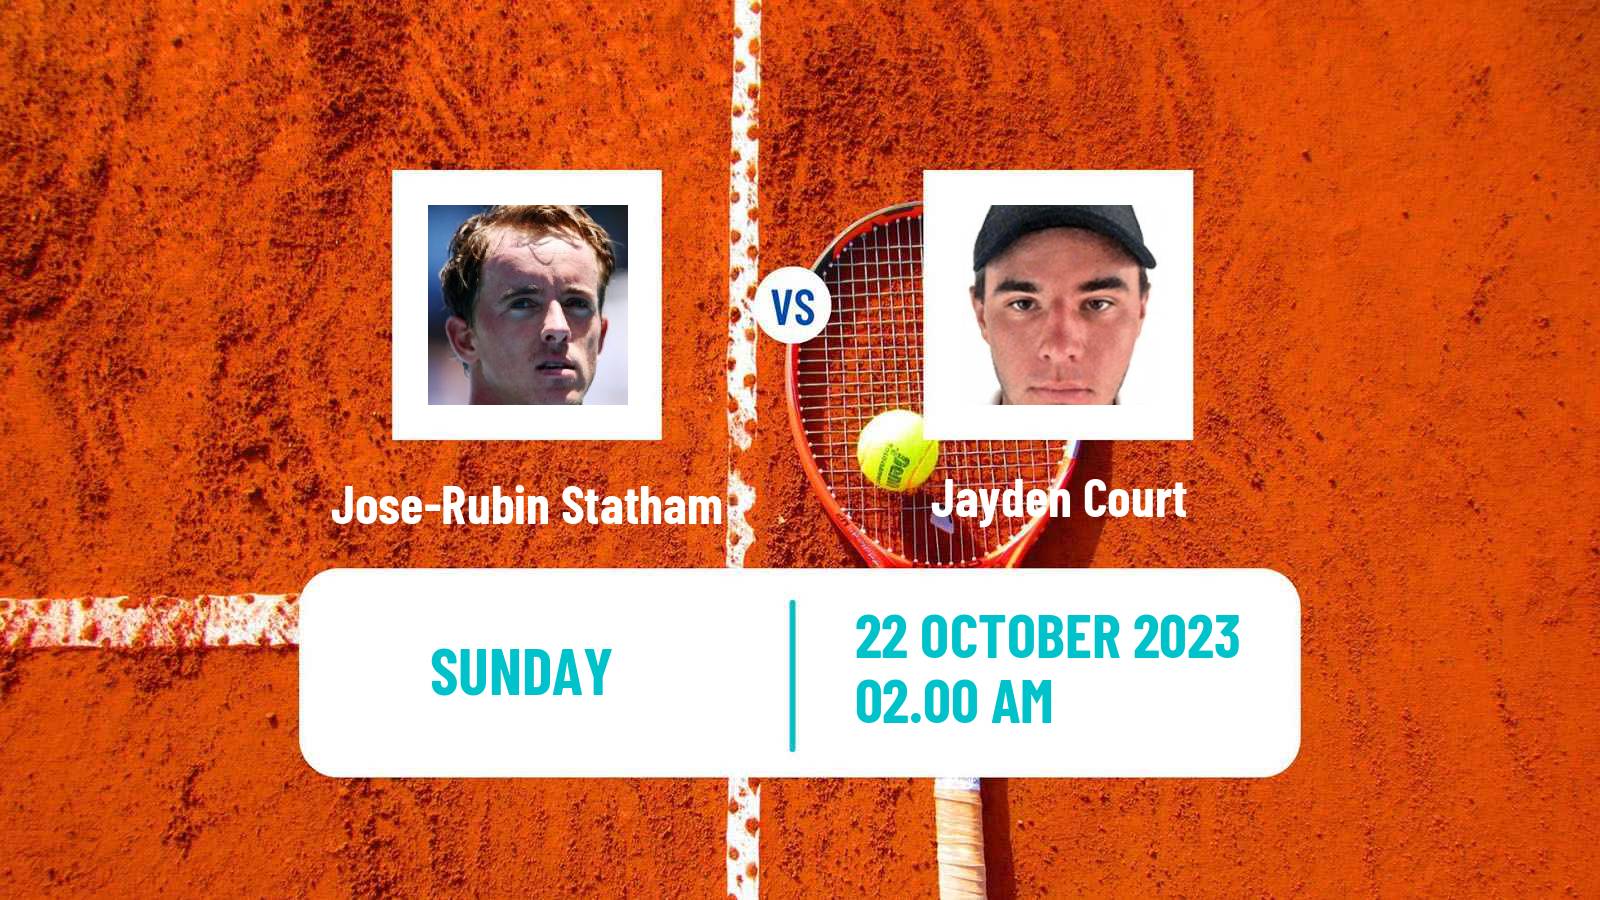 Tennis Playford 2 Challenger Men Jose-Rubin Statham - Jayden Court